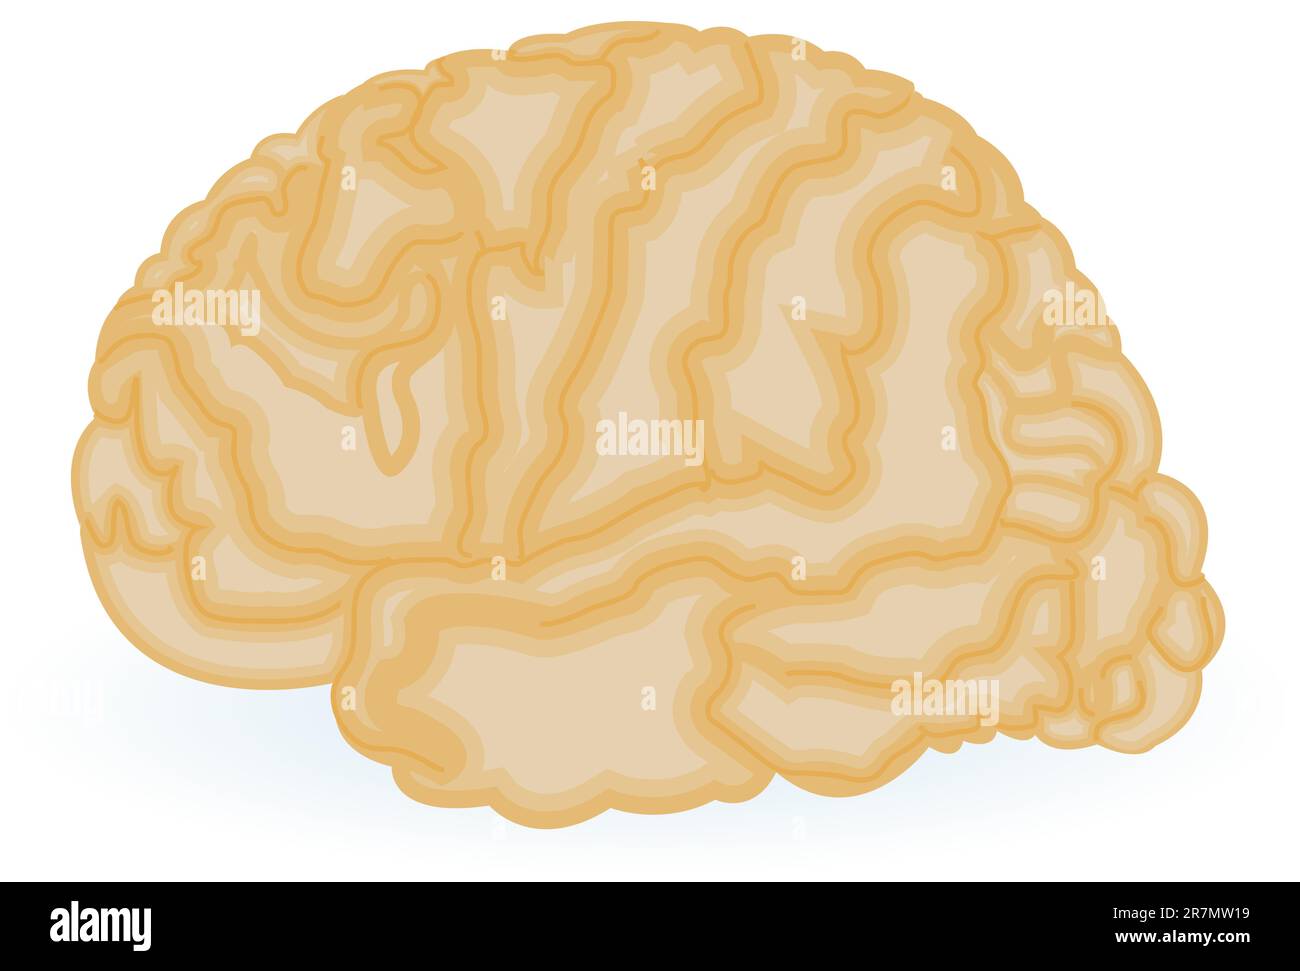 Illustrazione di un cervello umano isolato su sfondo bianco. Illustrazione Vettoriale